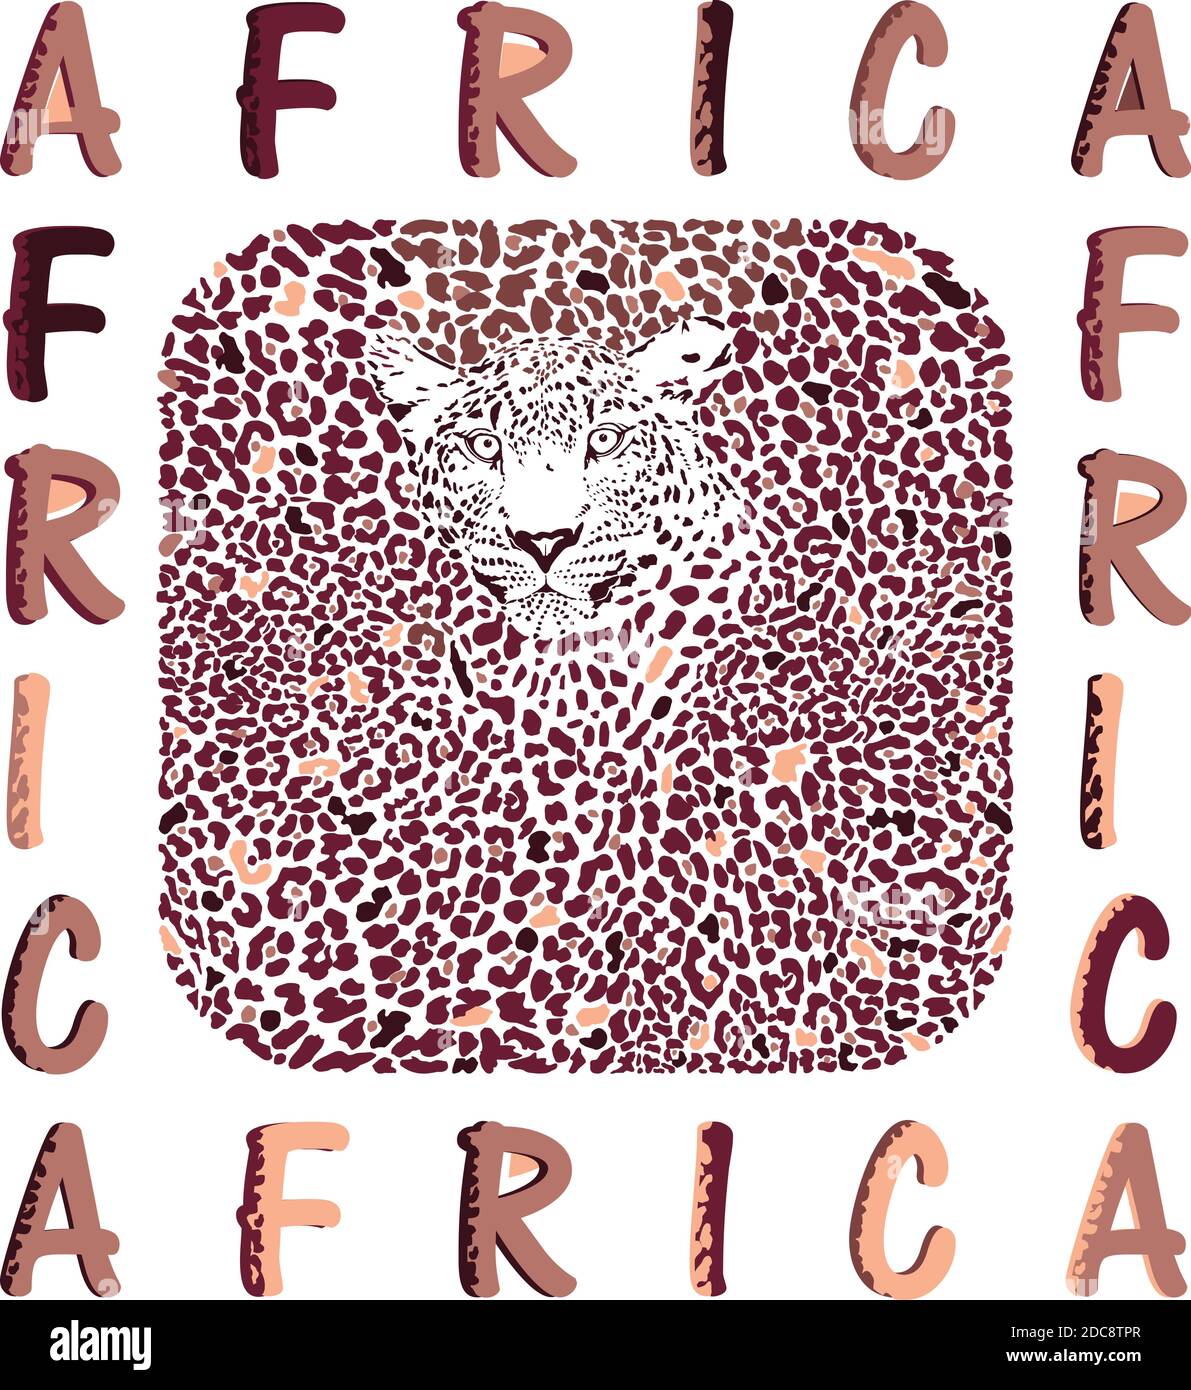 L'Afrique et la texture abstraite du léopard Illustration de Vecteur